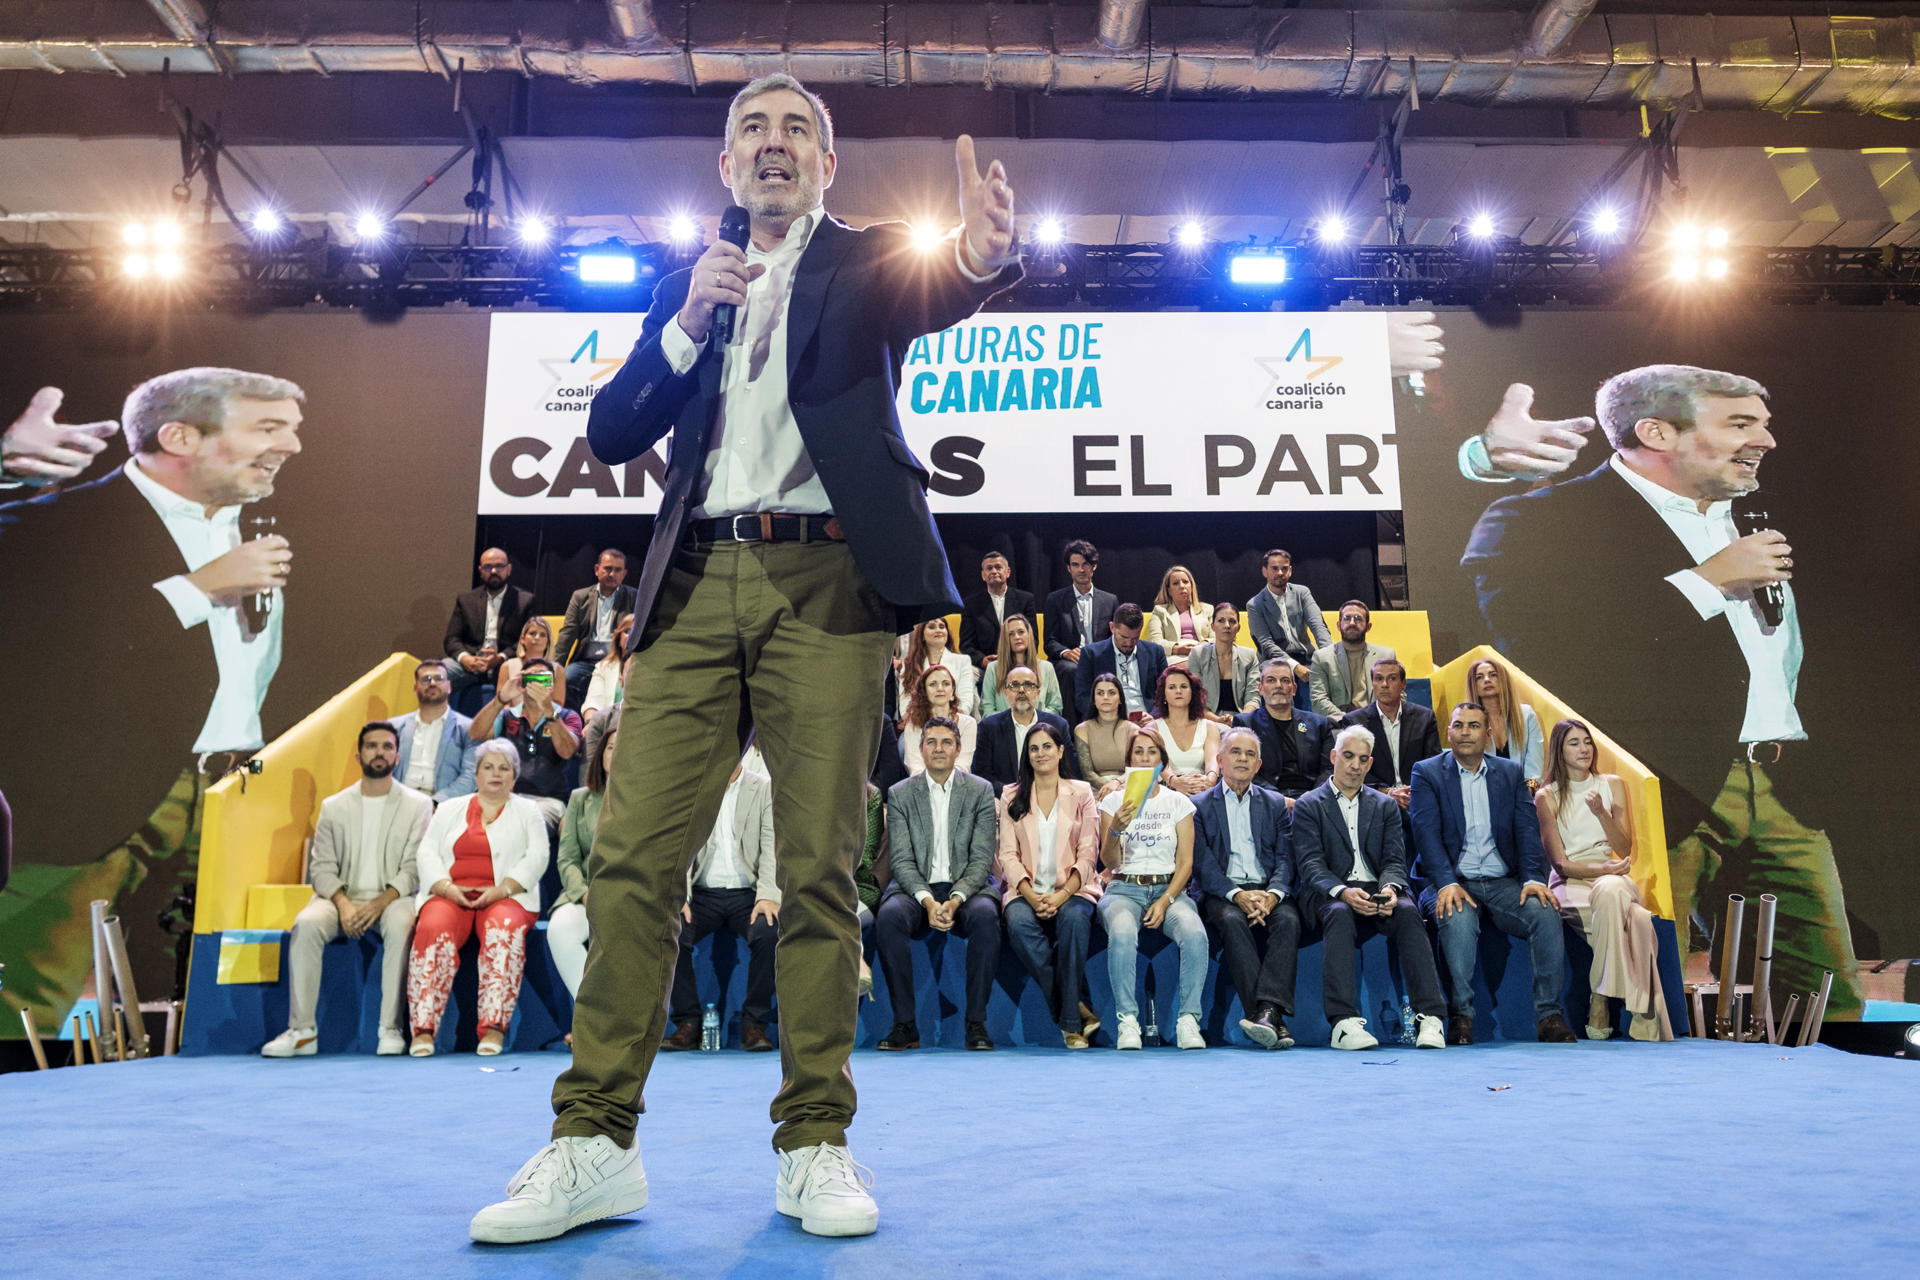 El candidato de Coalición Canaria a presidente del Gobierno, Fernando Clavijo, intervino este sábado en el acto de presentación de las listas que presenta su partido en Gran Canaria al Parlamento, el Cabildo y los ayuntamientos. EFE/Ángel Medina G.